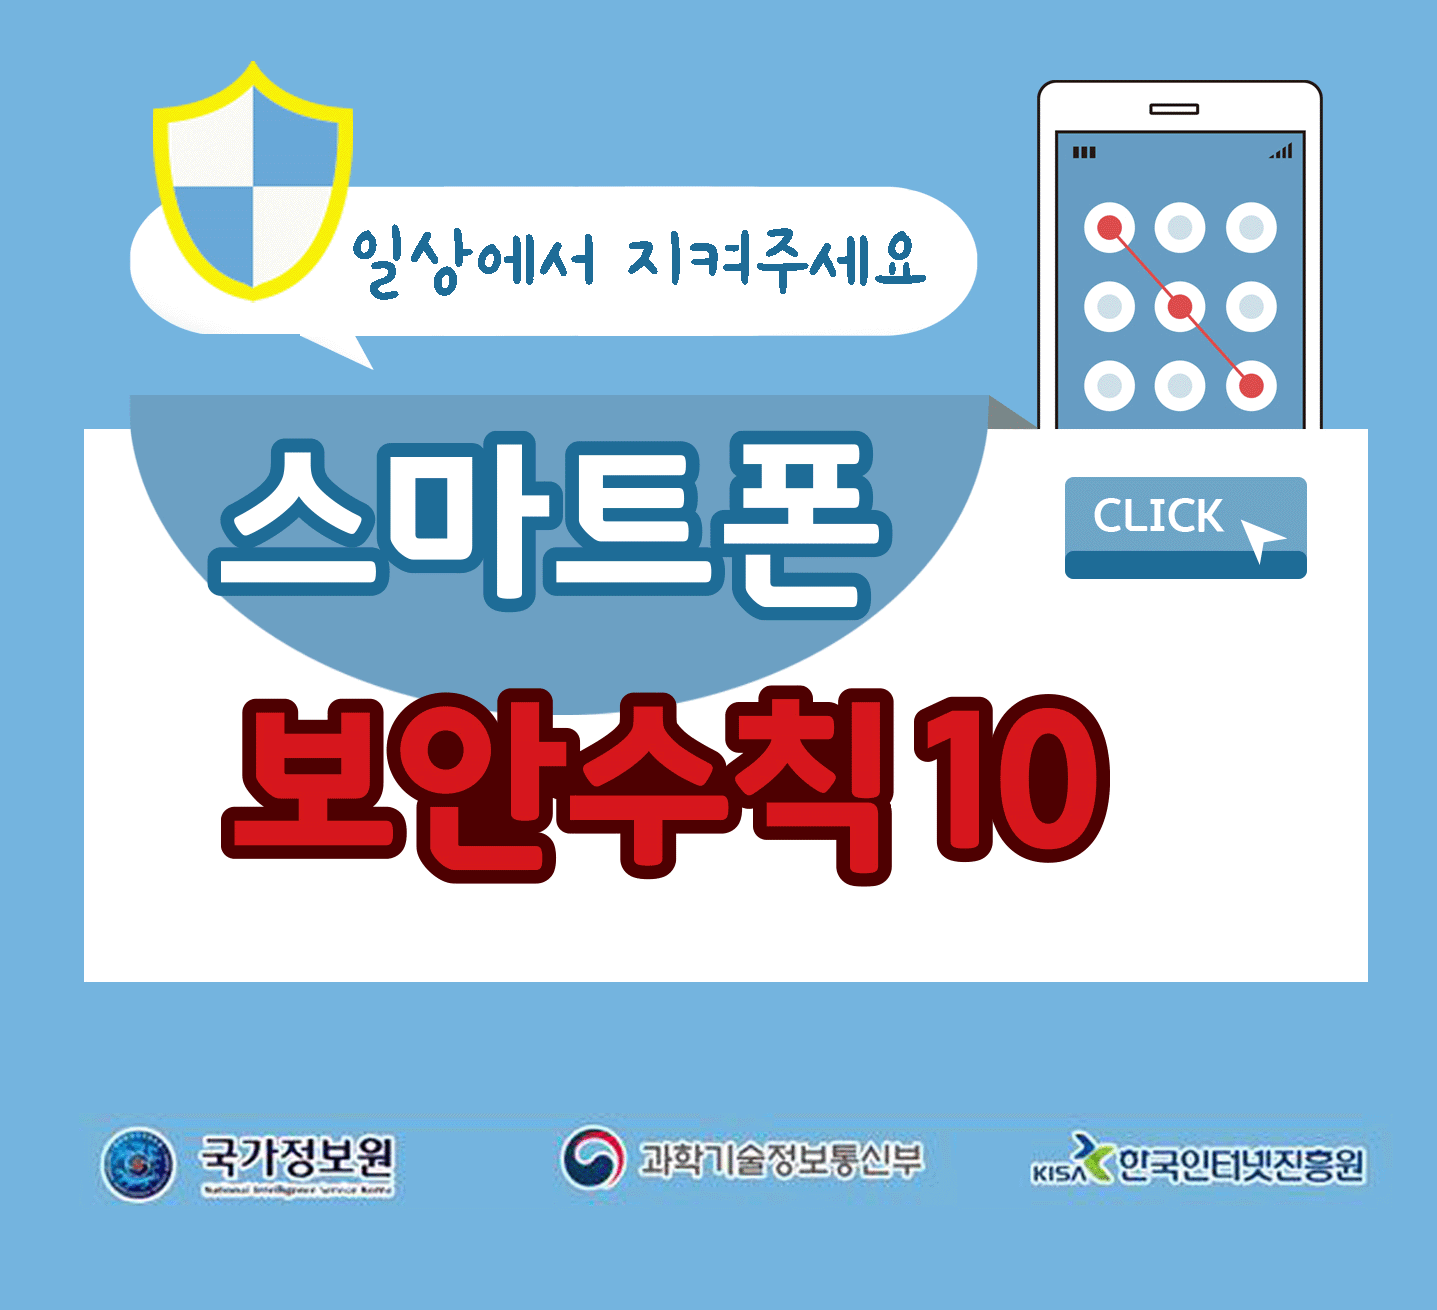 일상에서 지켜주세요
스마트폰 보안수칙 10 CLICK
국가정보원, 과학기술정보통신부, 한국인터넷진흥원;jsessionid=91711880826670A1785D11A80EAEB58D